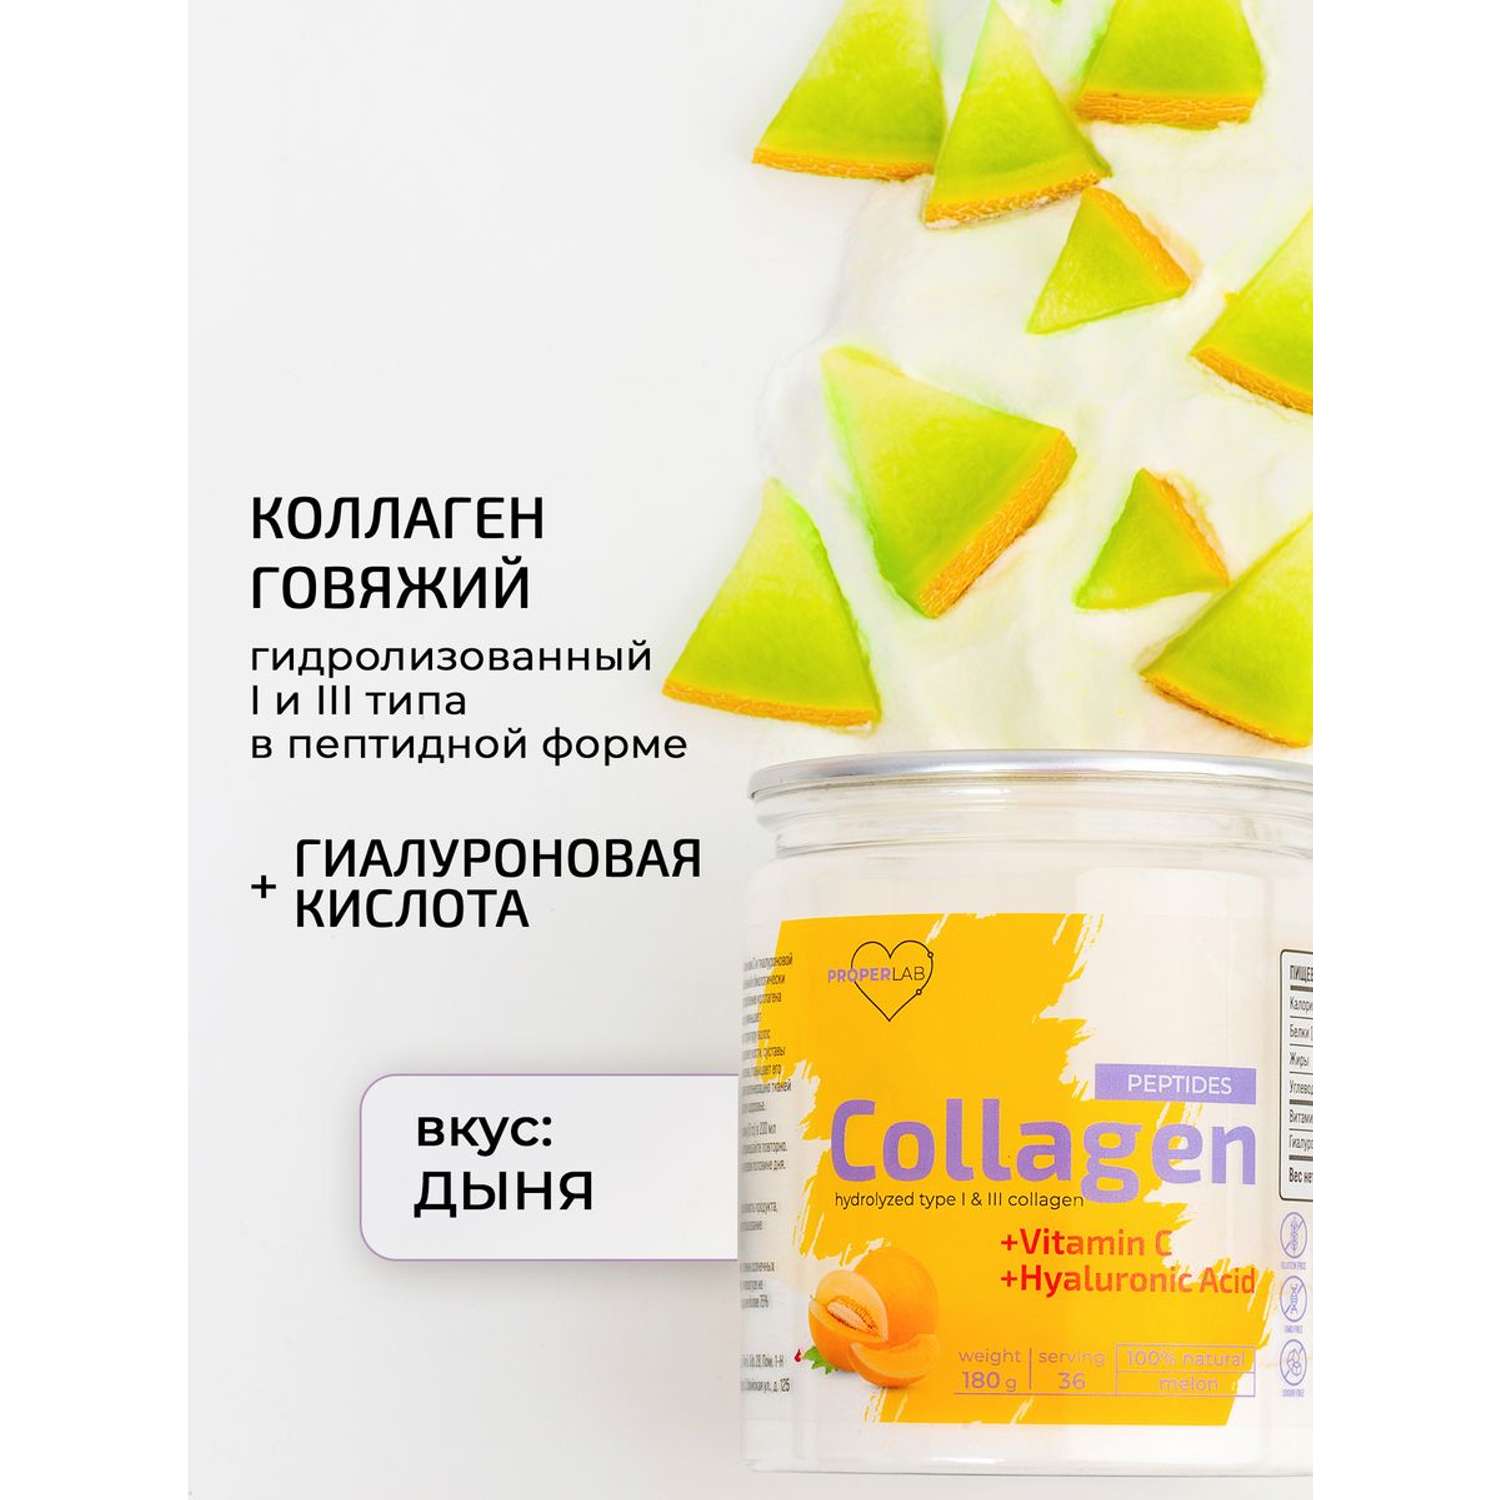 Коллаген + Витамин С ProperLab с добавлением гиалуроновой кислоты - фото 2